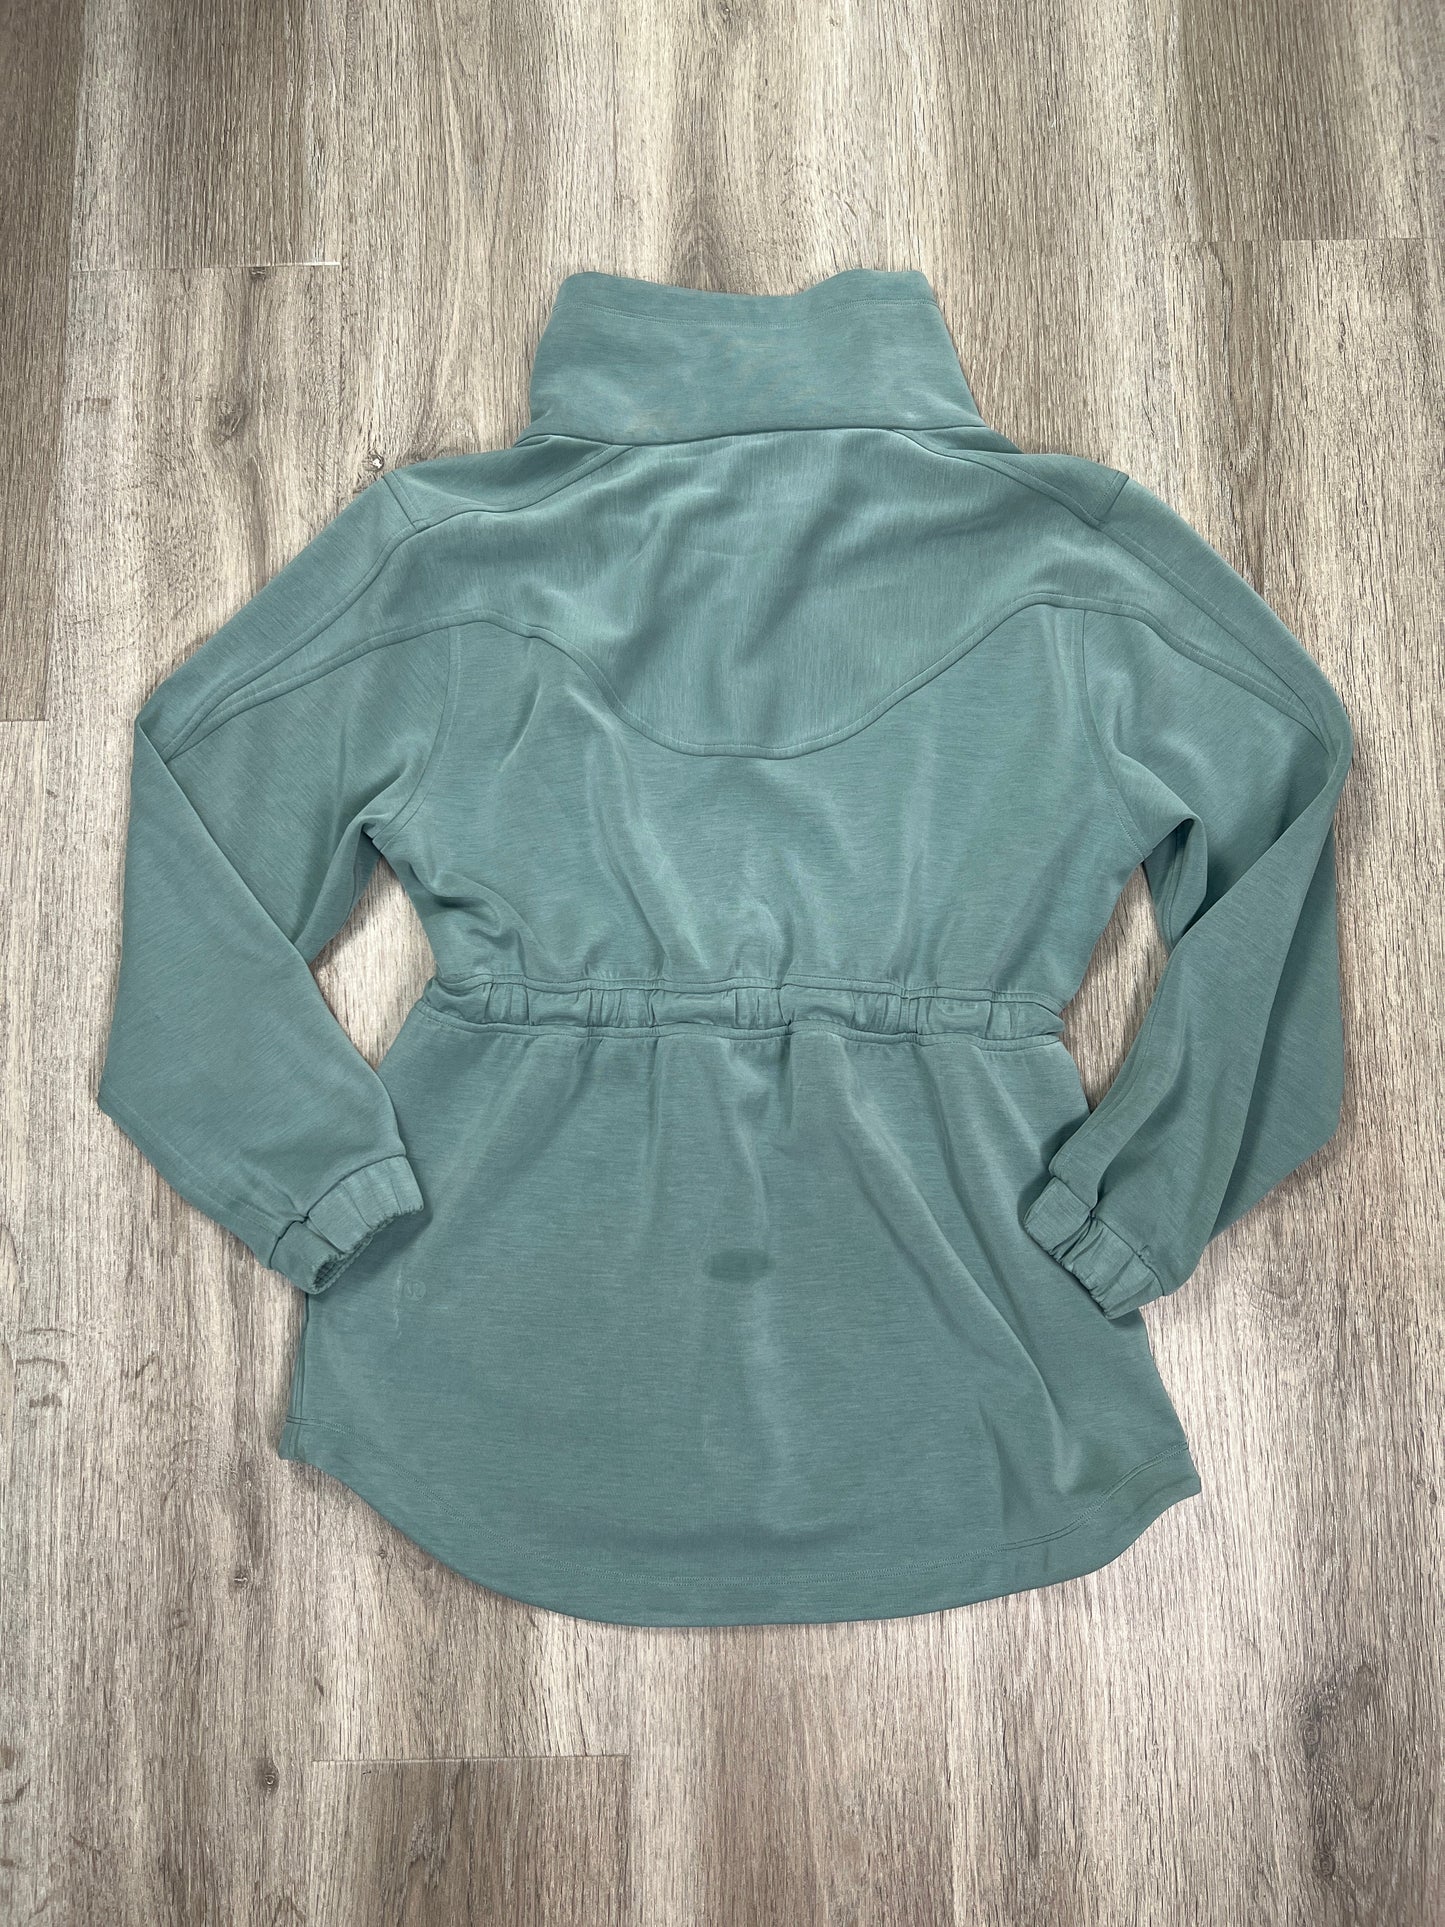 Green Athletic Jacket Lululemon, Size S